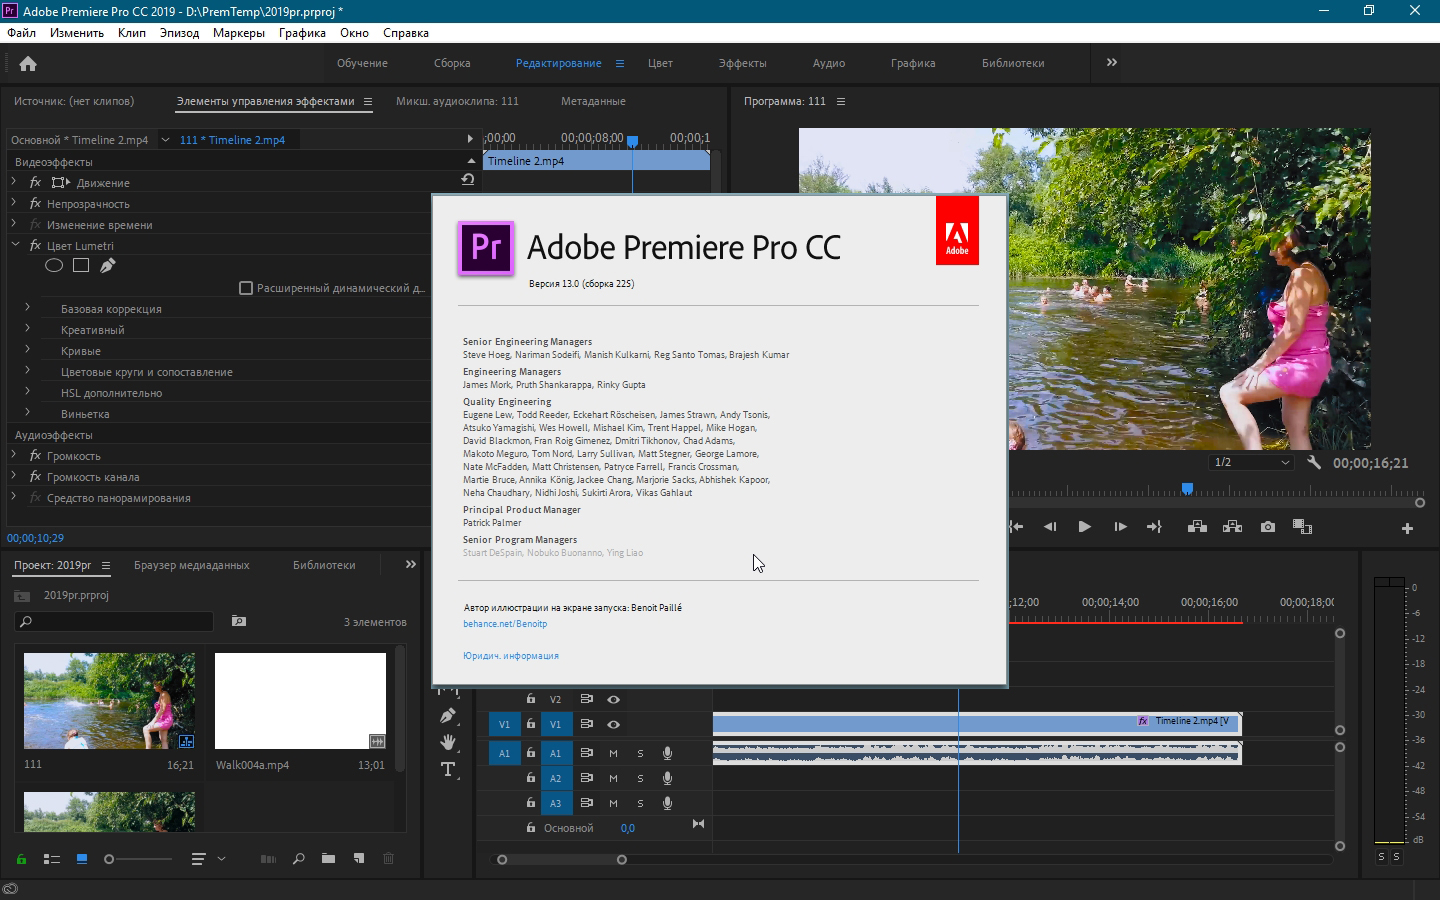 Про пробную версию. Premier Pro. Adobe Premiere Pro cc. Adobe Premiere Pro Pro 2019. Библиотека в Adobe Premiere Pro.